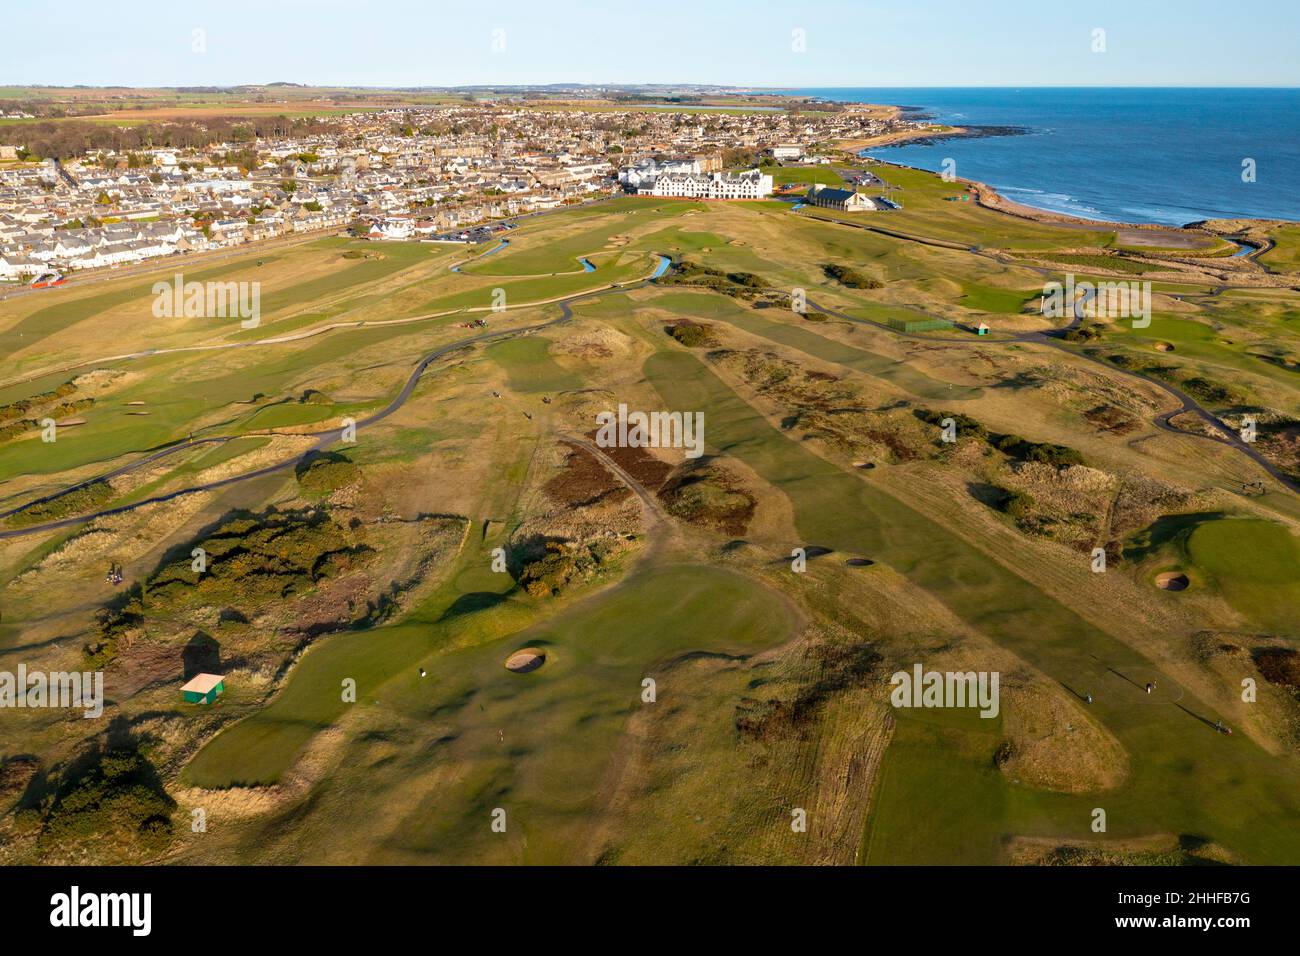 Vista aerea dal drone del campo da golf Carnoustie Golf Links a Carnoustie, Angus, Scozia, Regno Unito Foto Stock